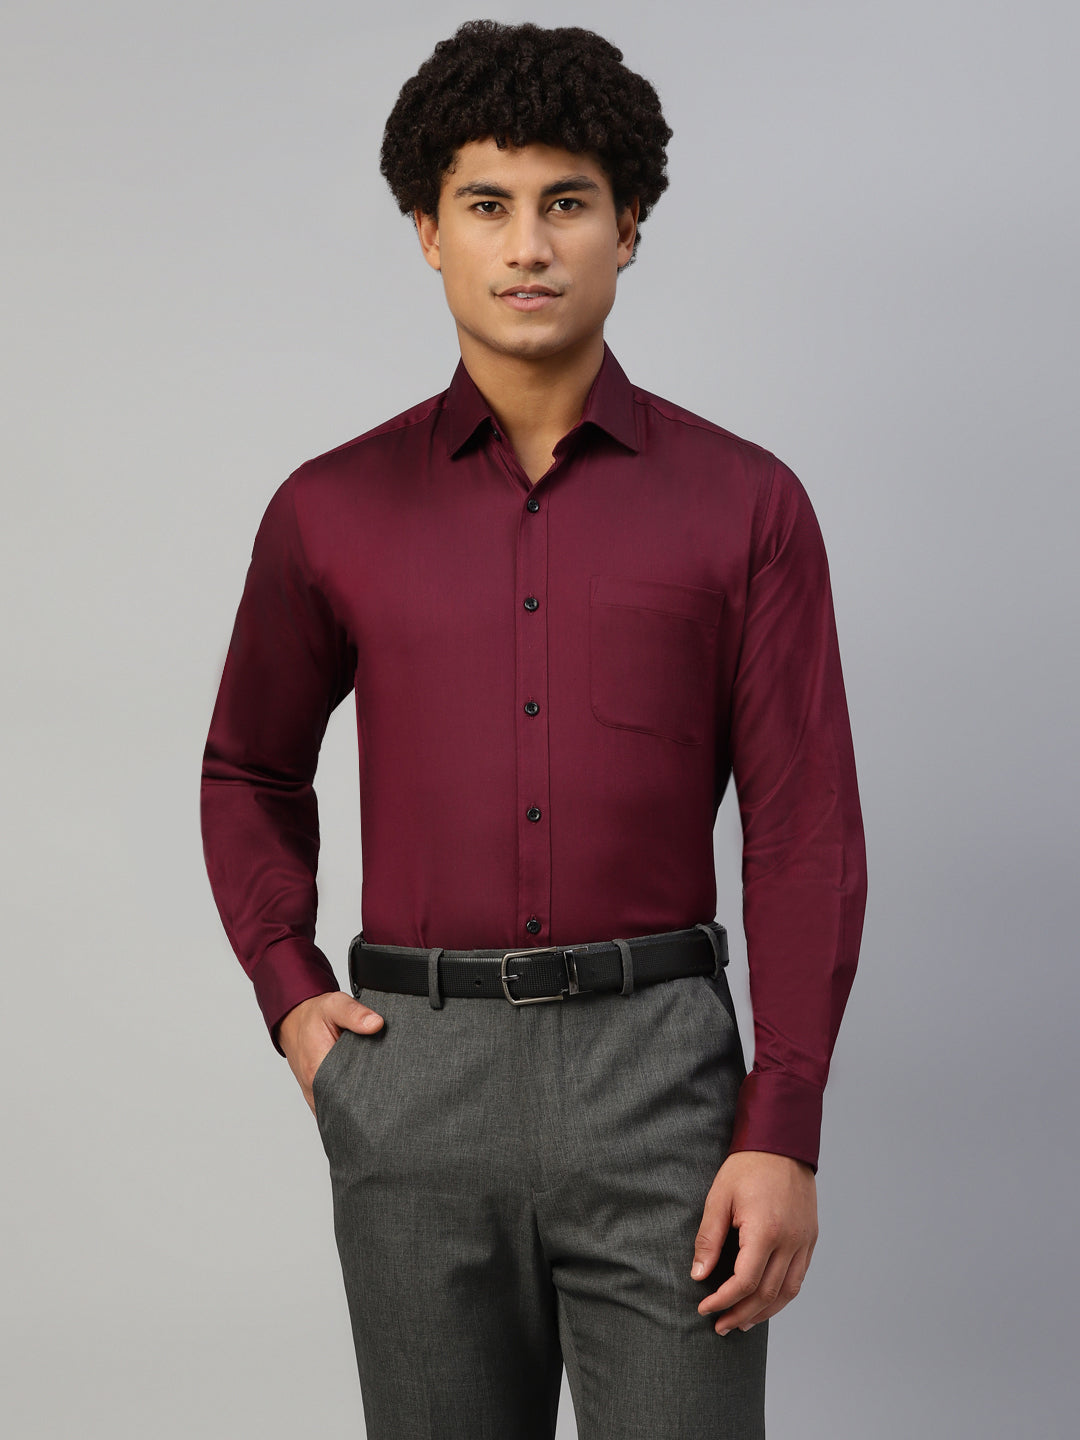 Don Vino Men's Solid Red Full Sleeve Regular Fit Shirt